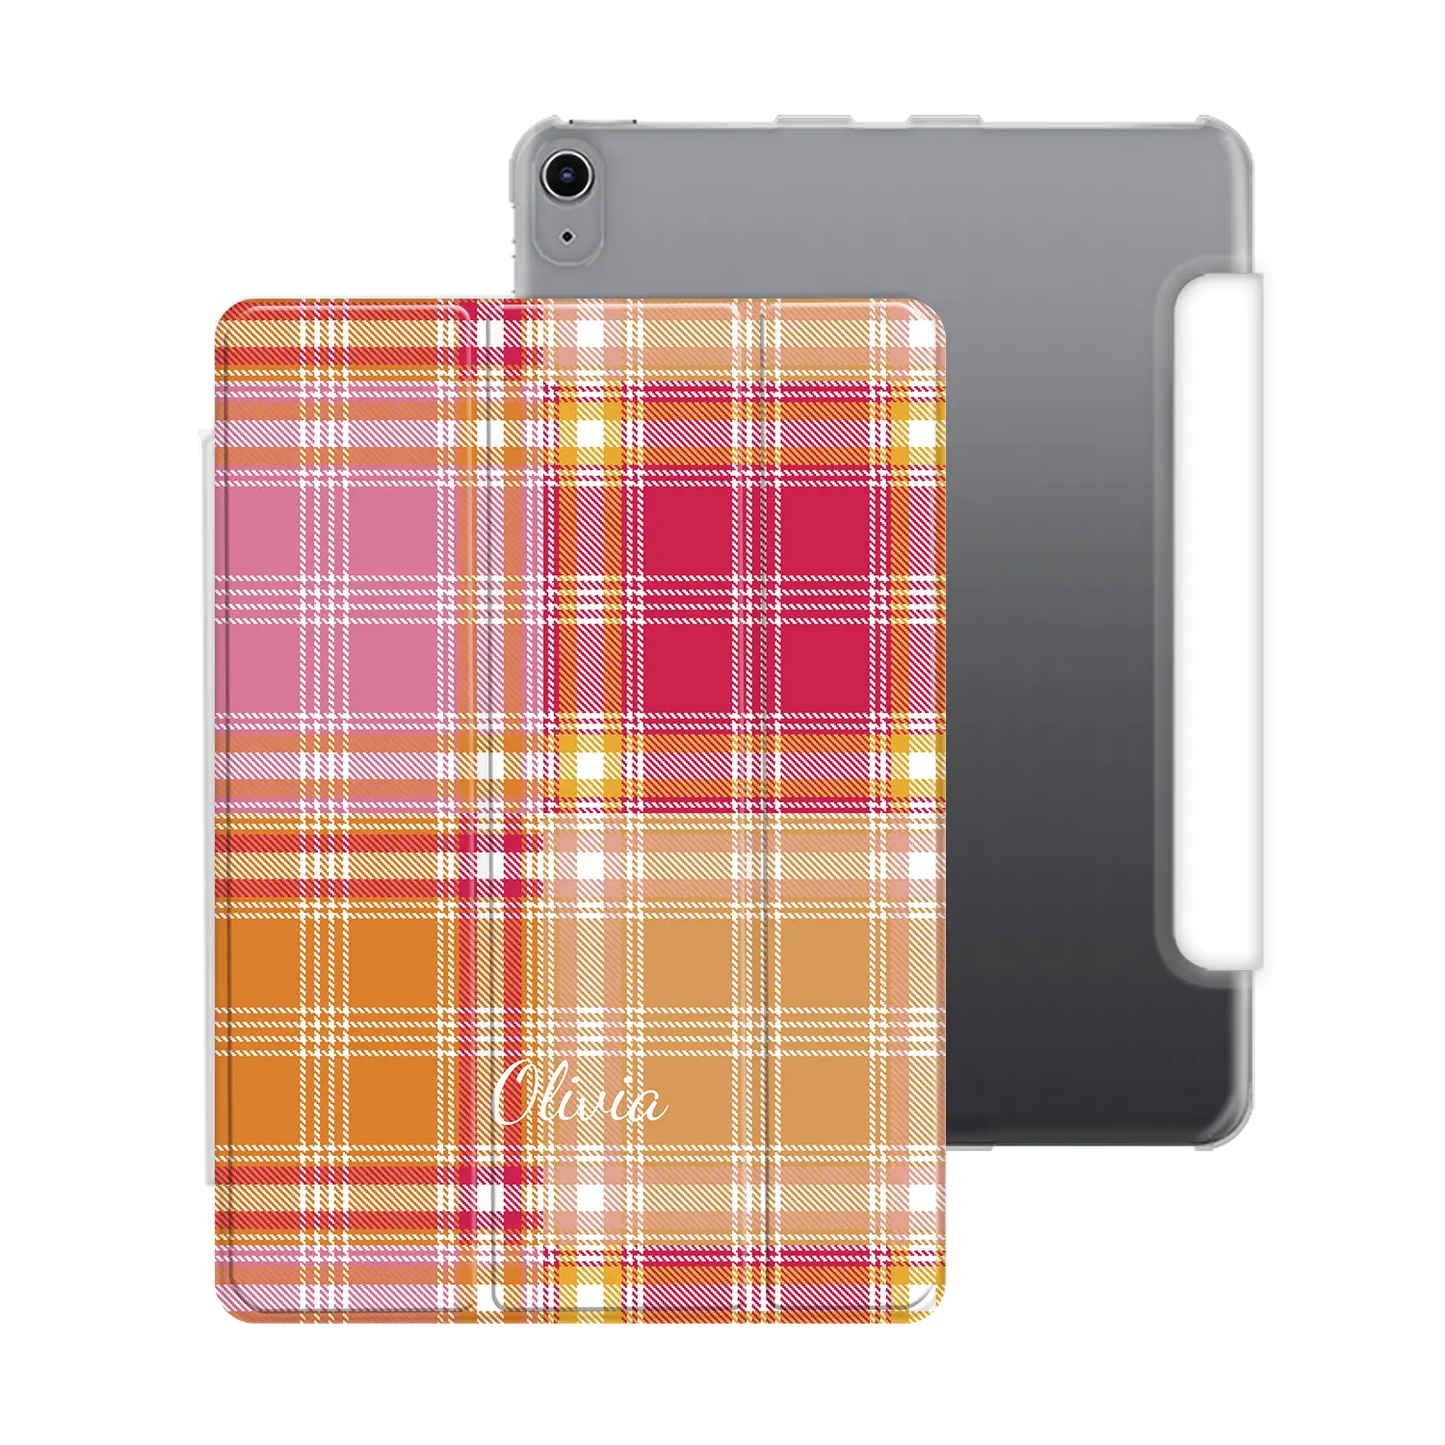 Plaid & Simple - iPad personnalisé coque